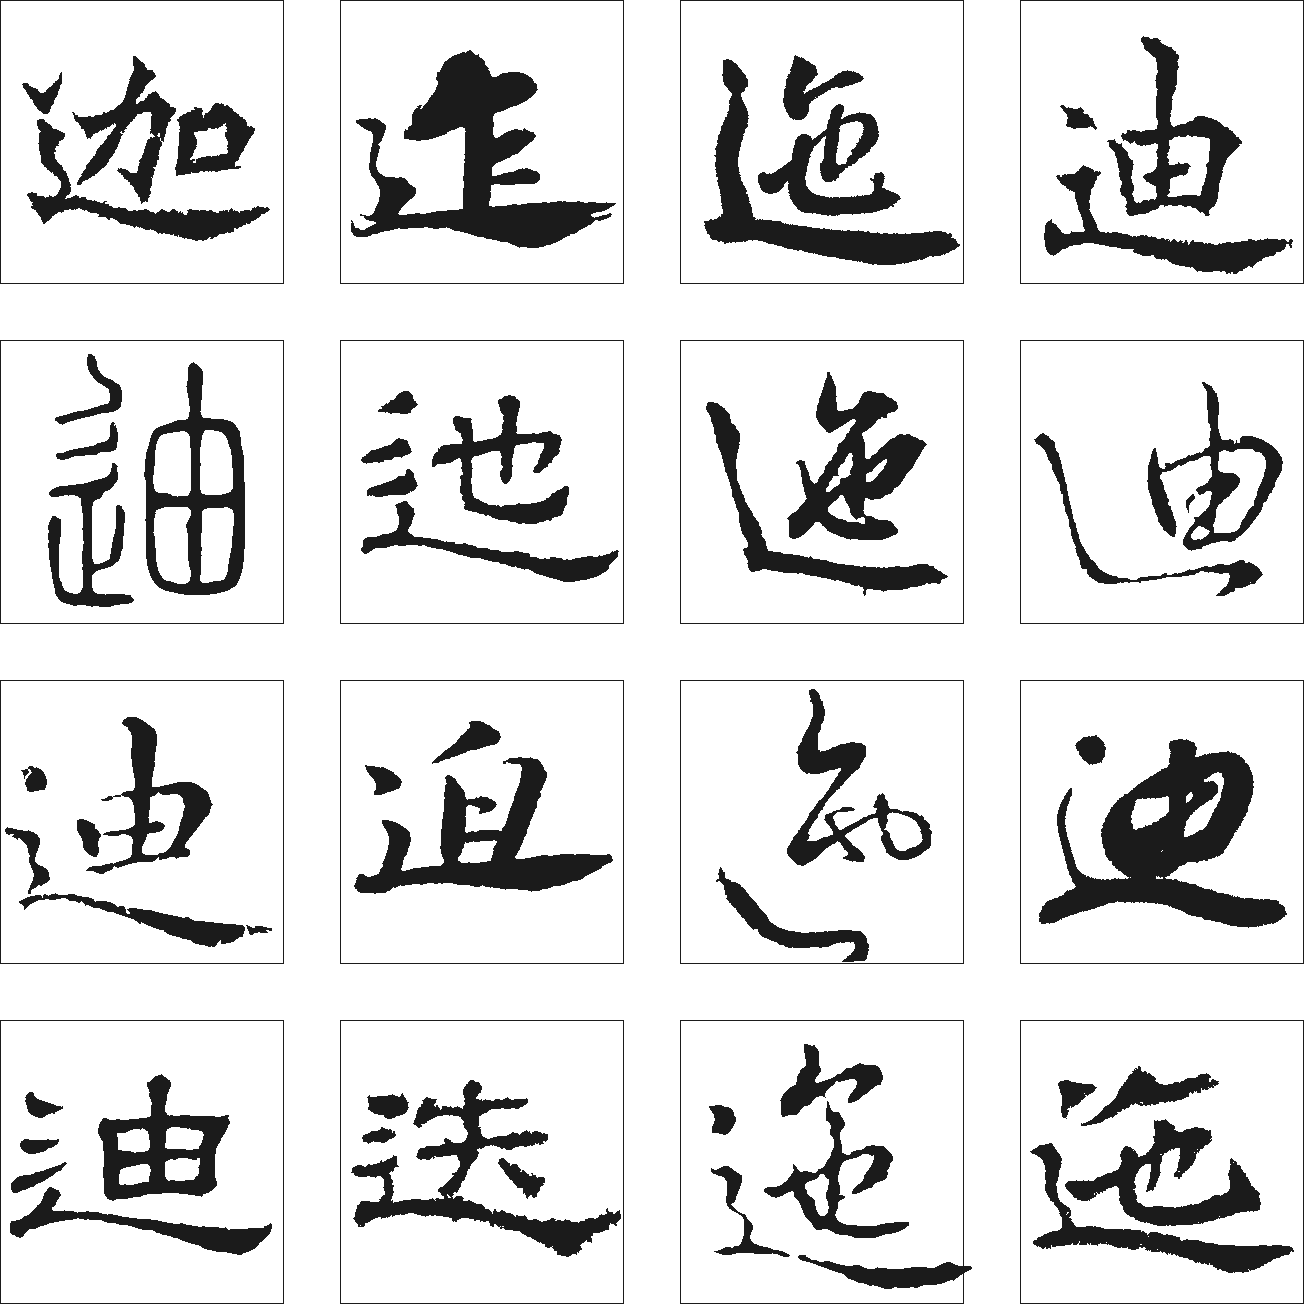 迪近迭迦迤迮 艺术字 毛笔字 书法字 繁体 标志设计 